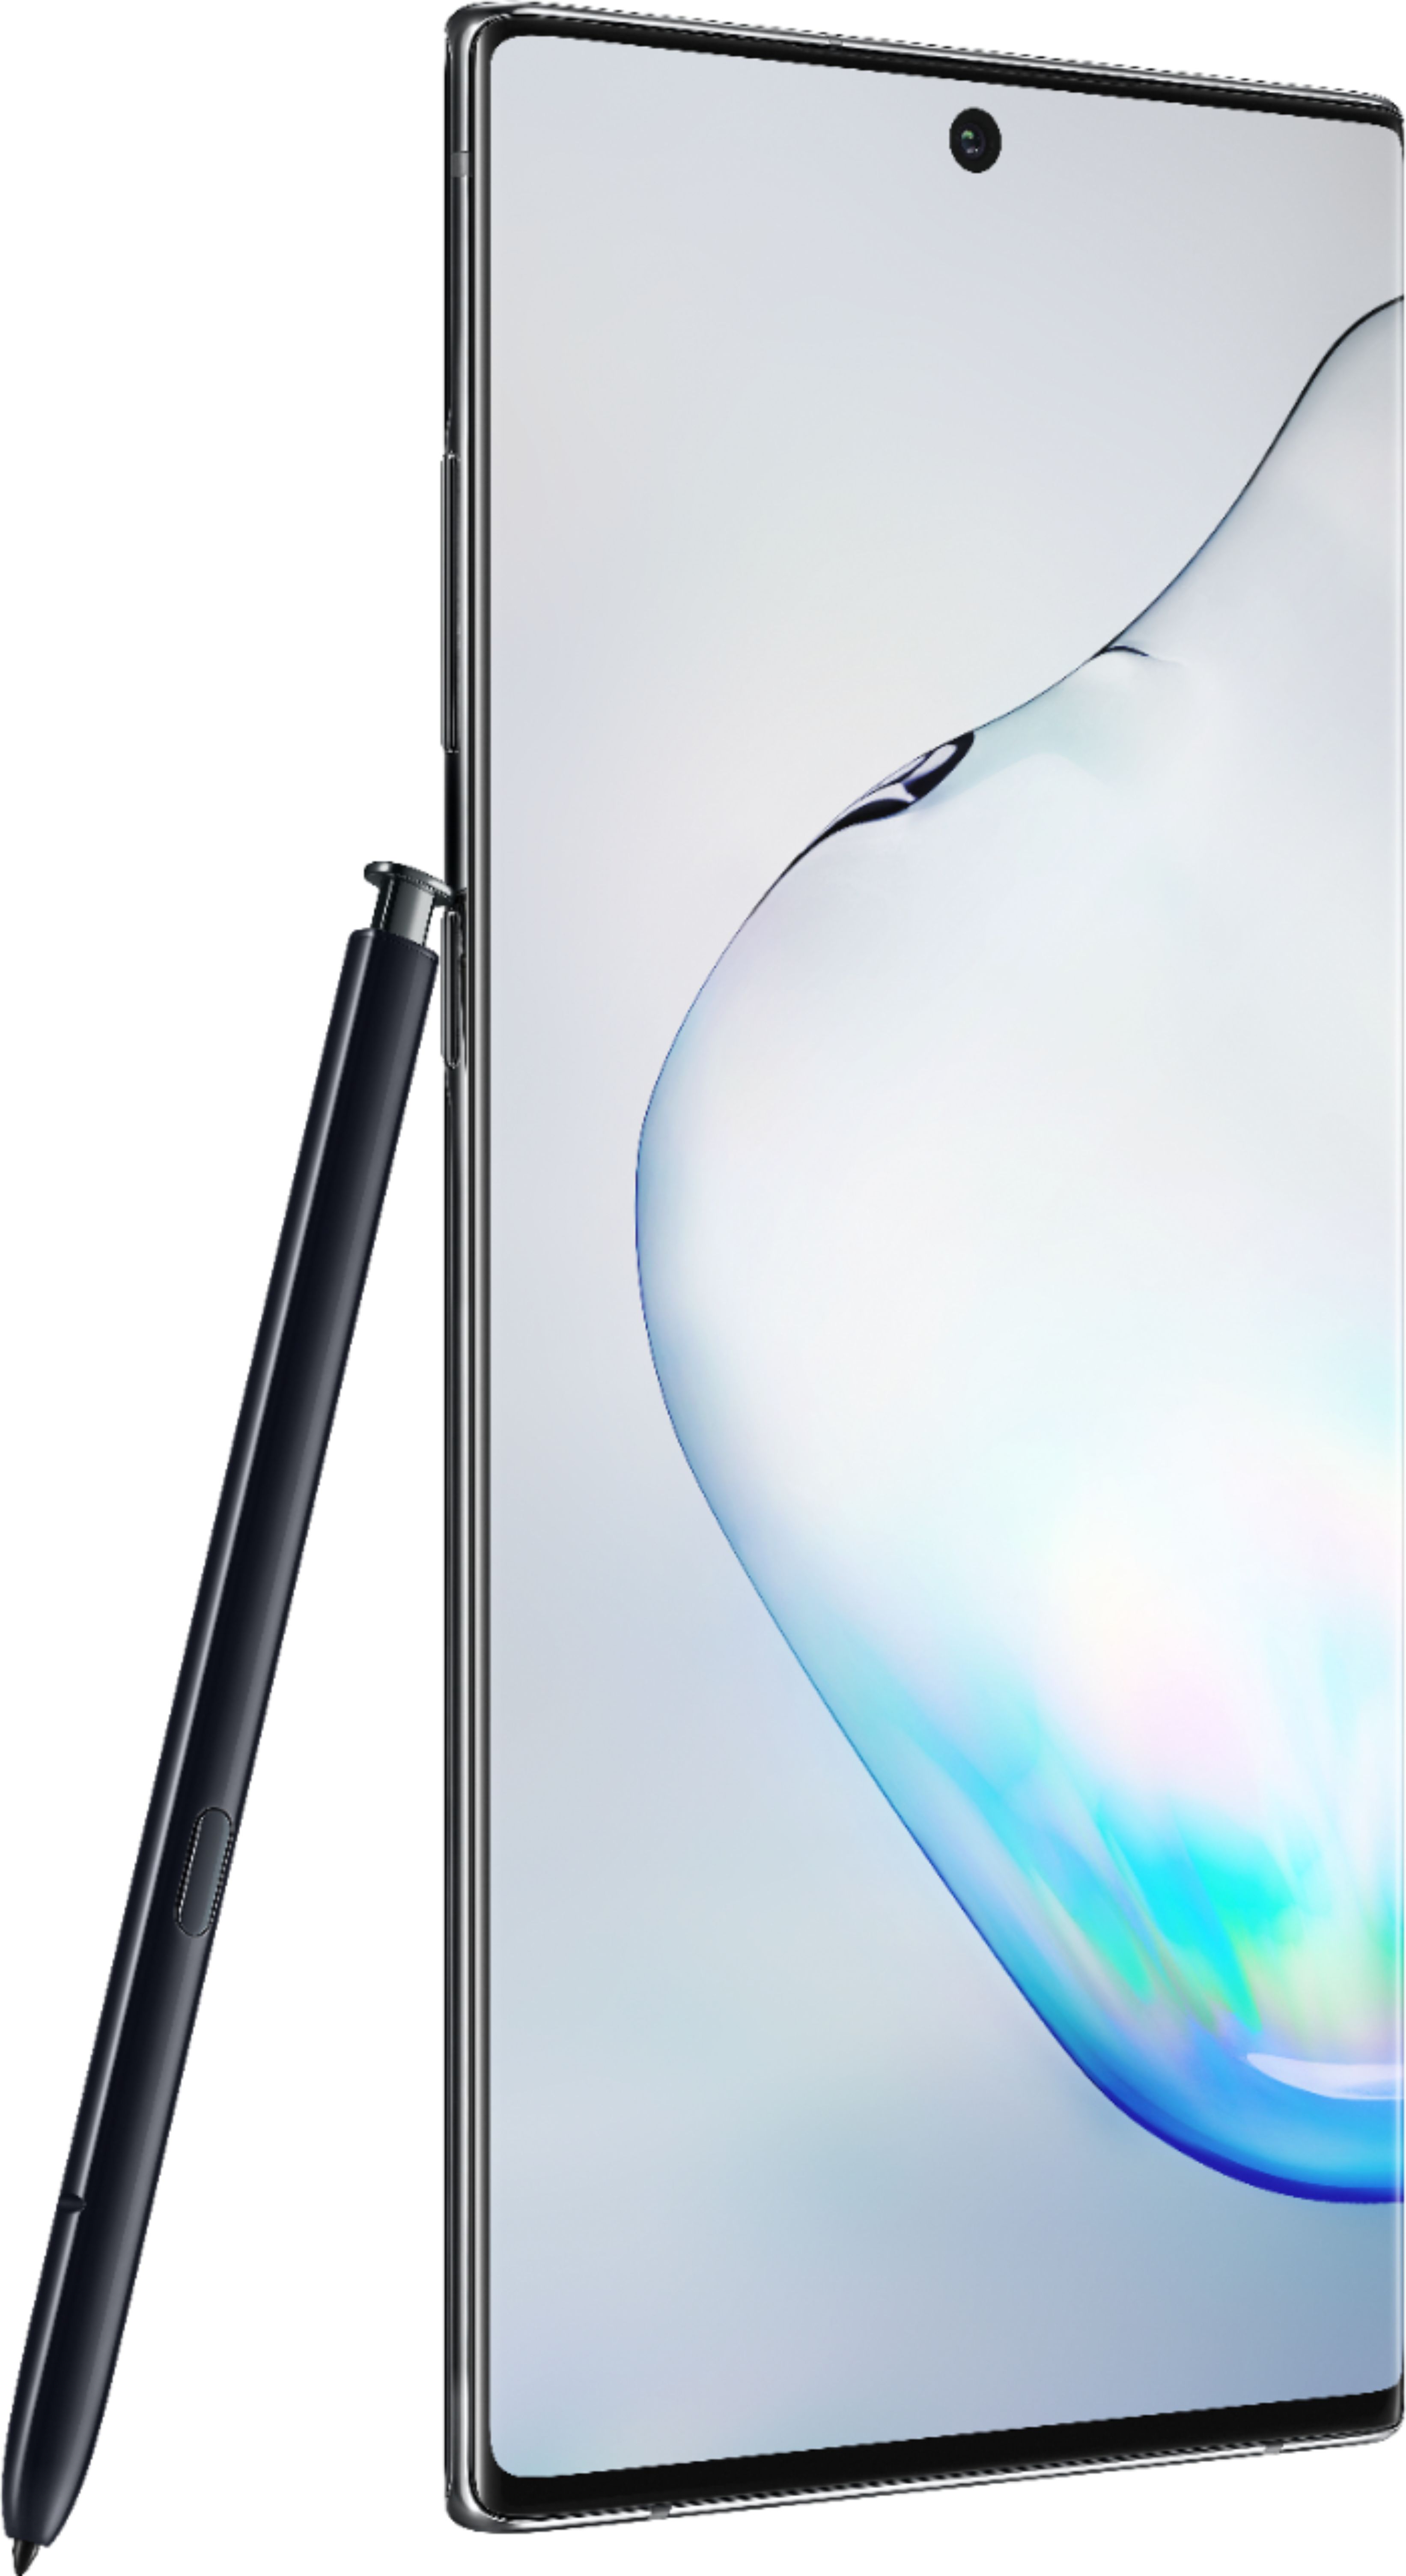 スマートフォン/携帯電話 スマートフォン本体 Best Buy: Samsung Galaxy Note10+ with 256GB Memory Cell Phone 